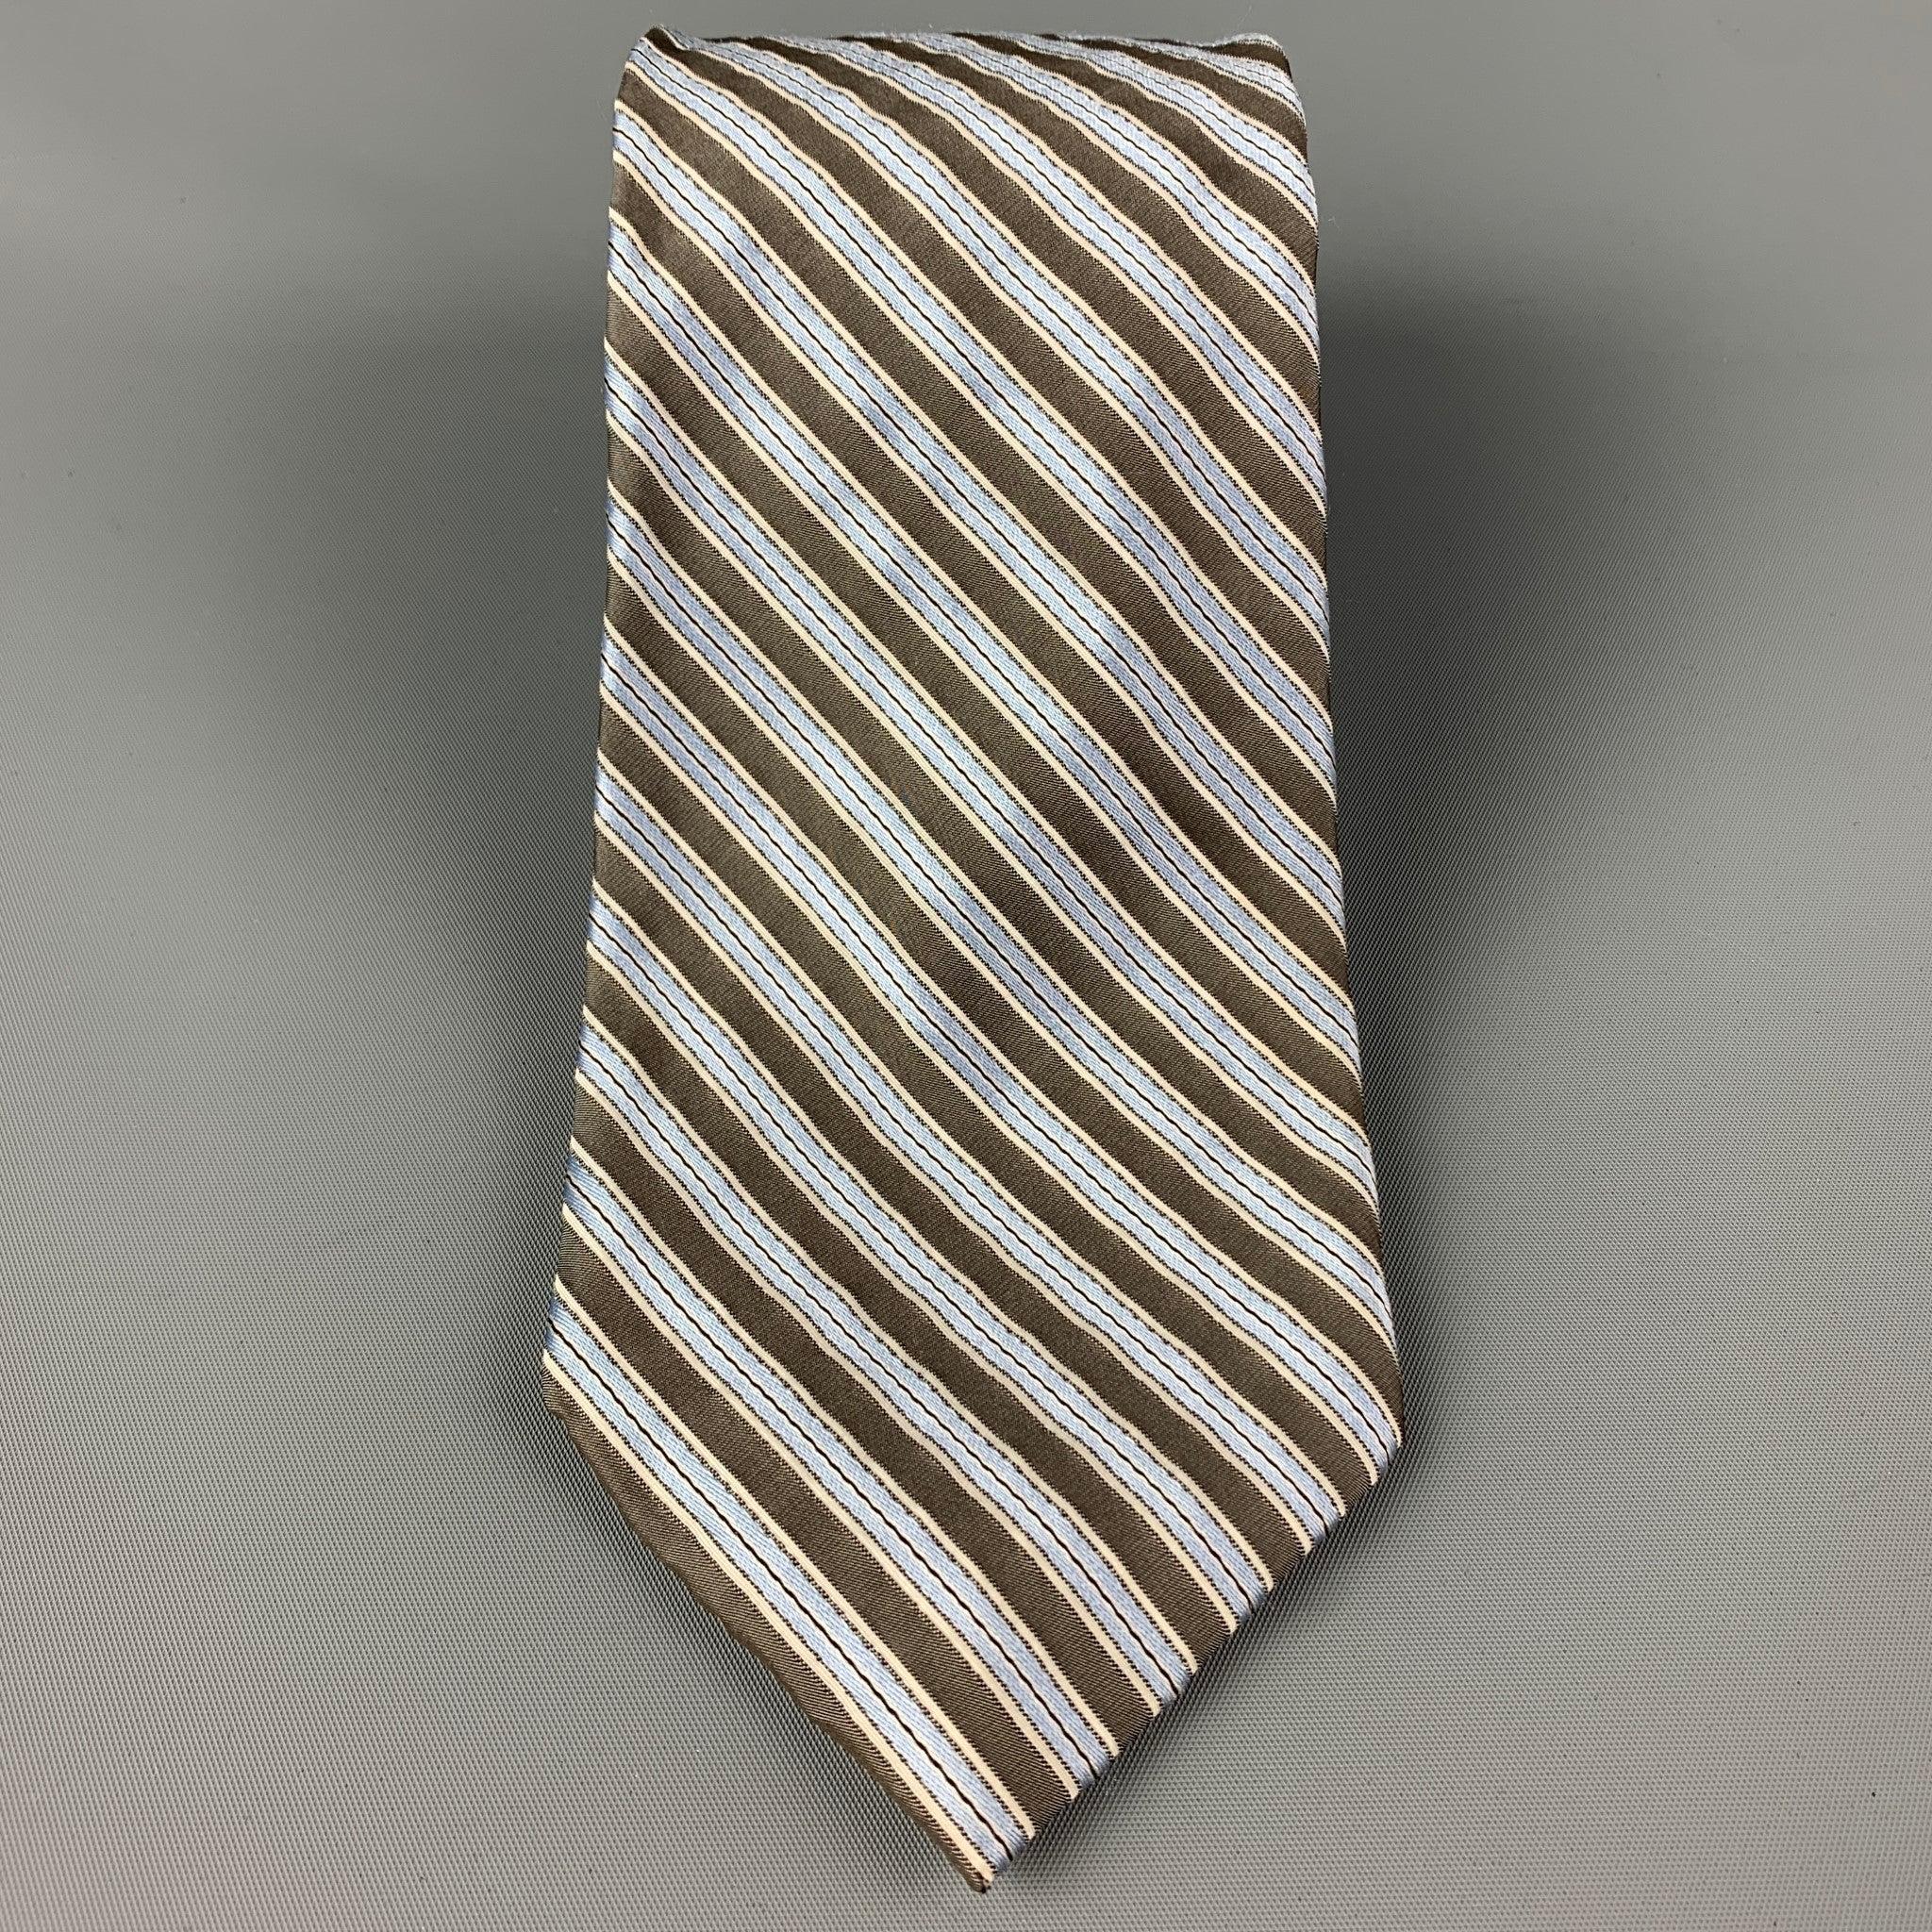 WILKES BASHFORD
Die Krawatte ist aus grüner und blauer Seide mit einem ganzflächigen Streifendruck. Hergestellt in Italien. Sehr guter gebrauchter Zustand. 

Abmessungen: 
  Breite: 3.5 Zoll  Länge: 30 Zoll 
  
  
 
Sui Generis-Referenz: